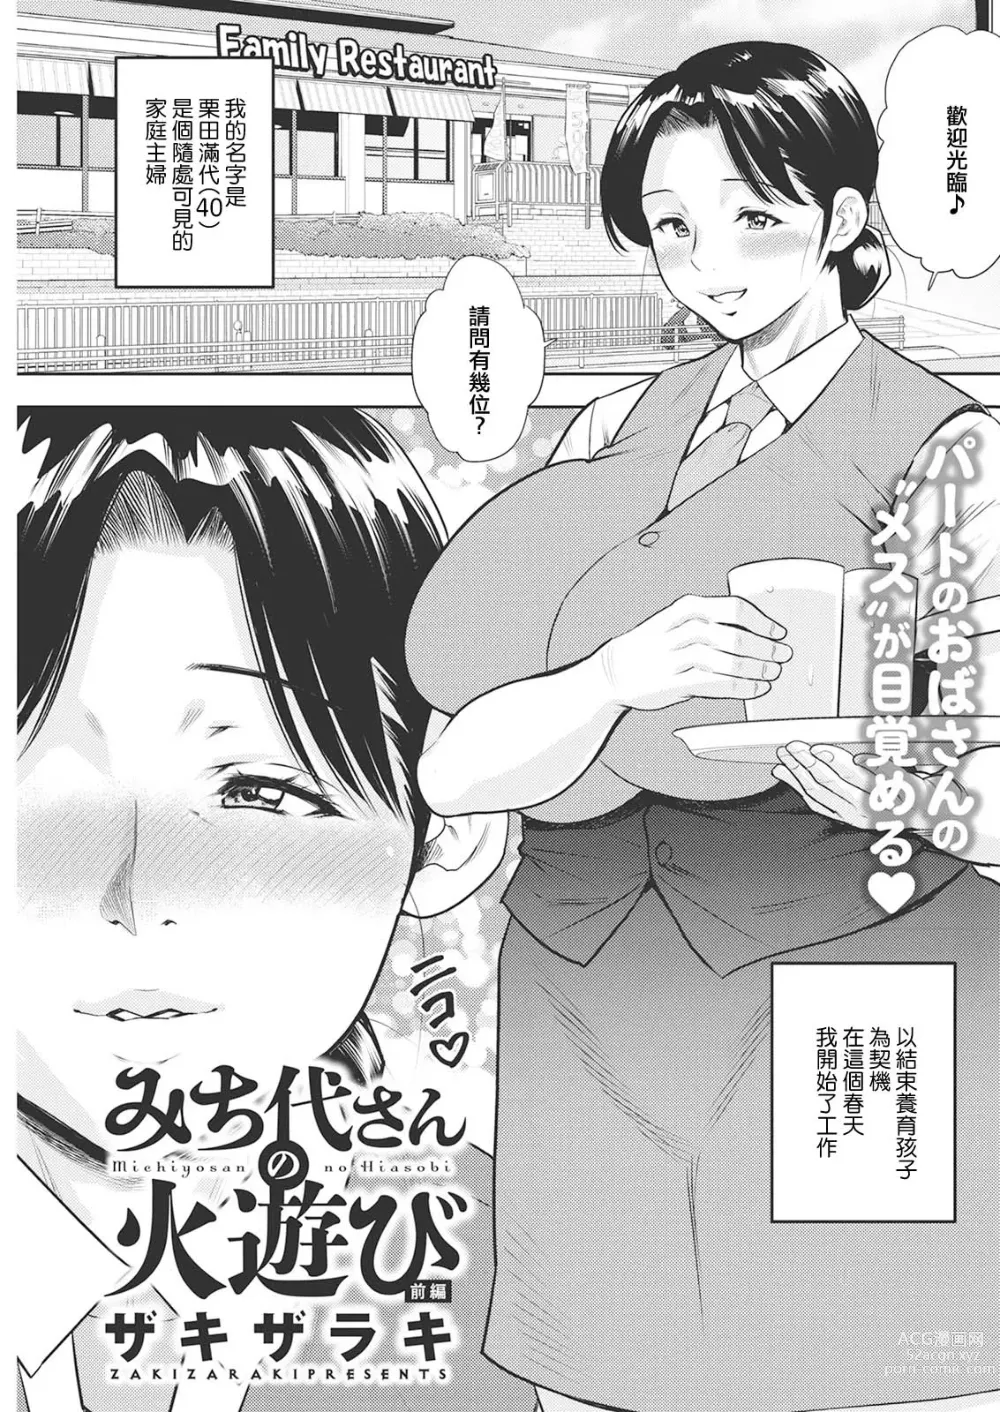 Page 1 of manga Michiyo-san no Hiasobi Zenpen